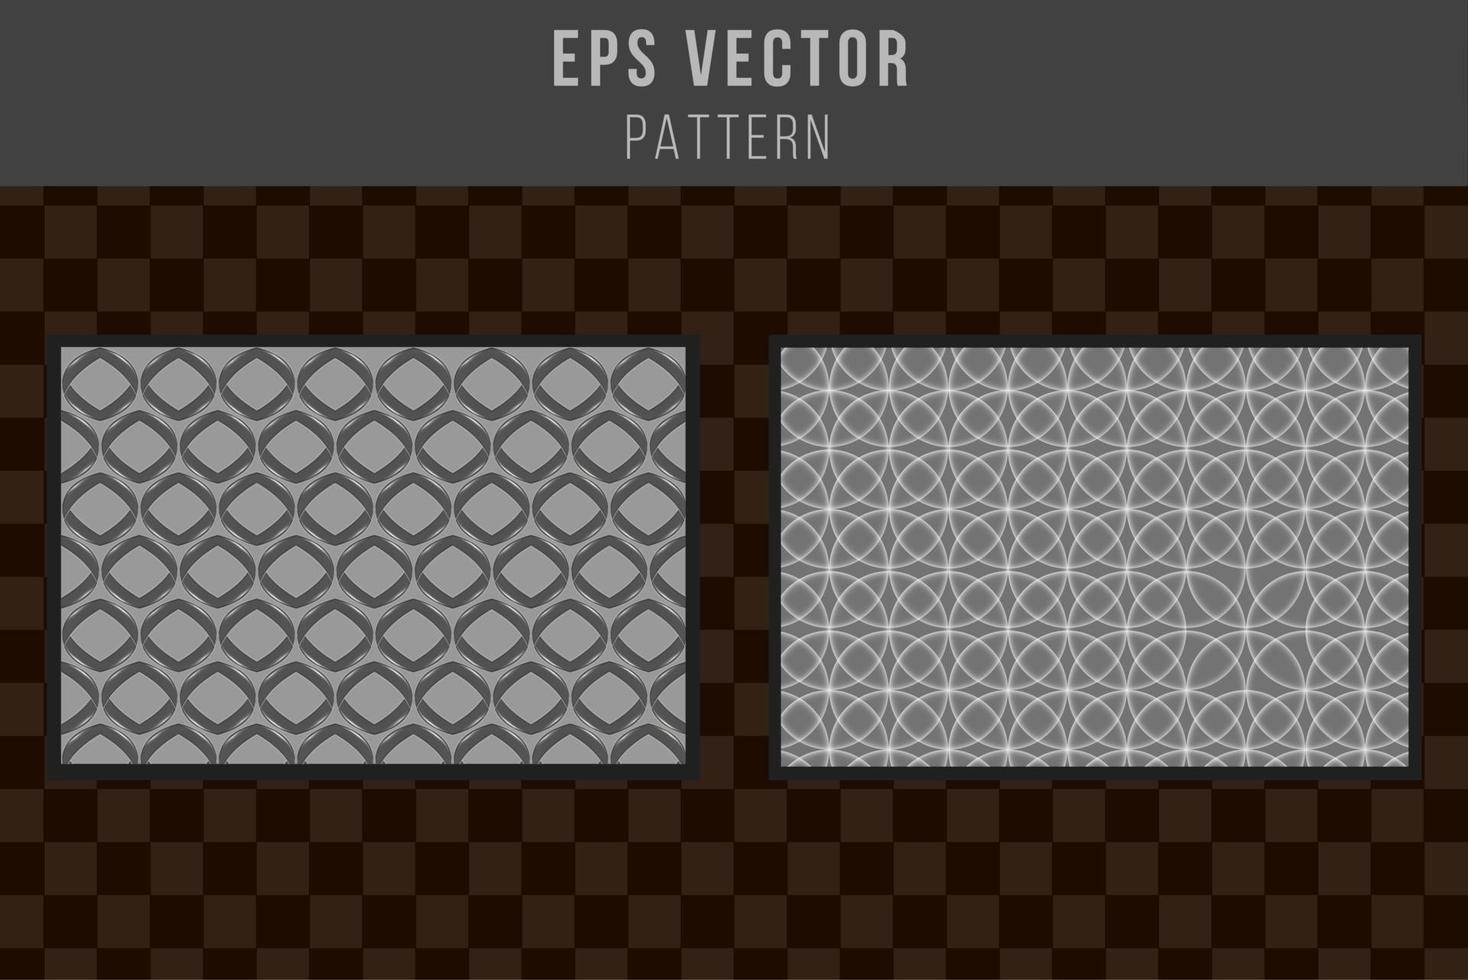 conjunto de patrones sin fisuras en escala de grises eps vector editable en blanco y negro